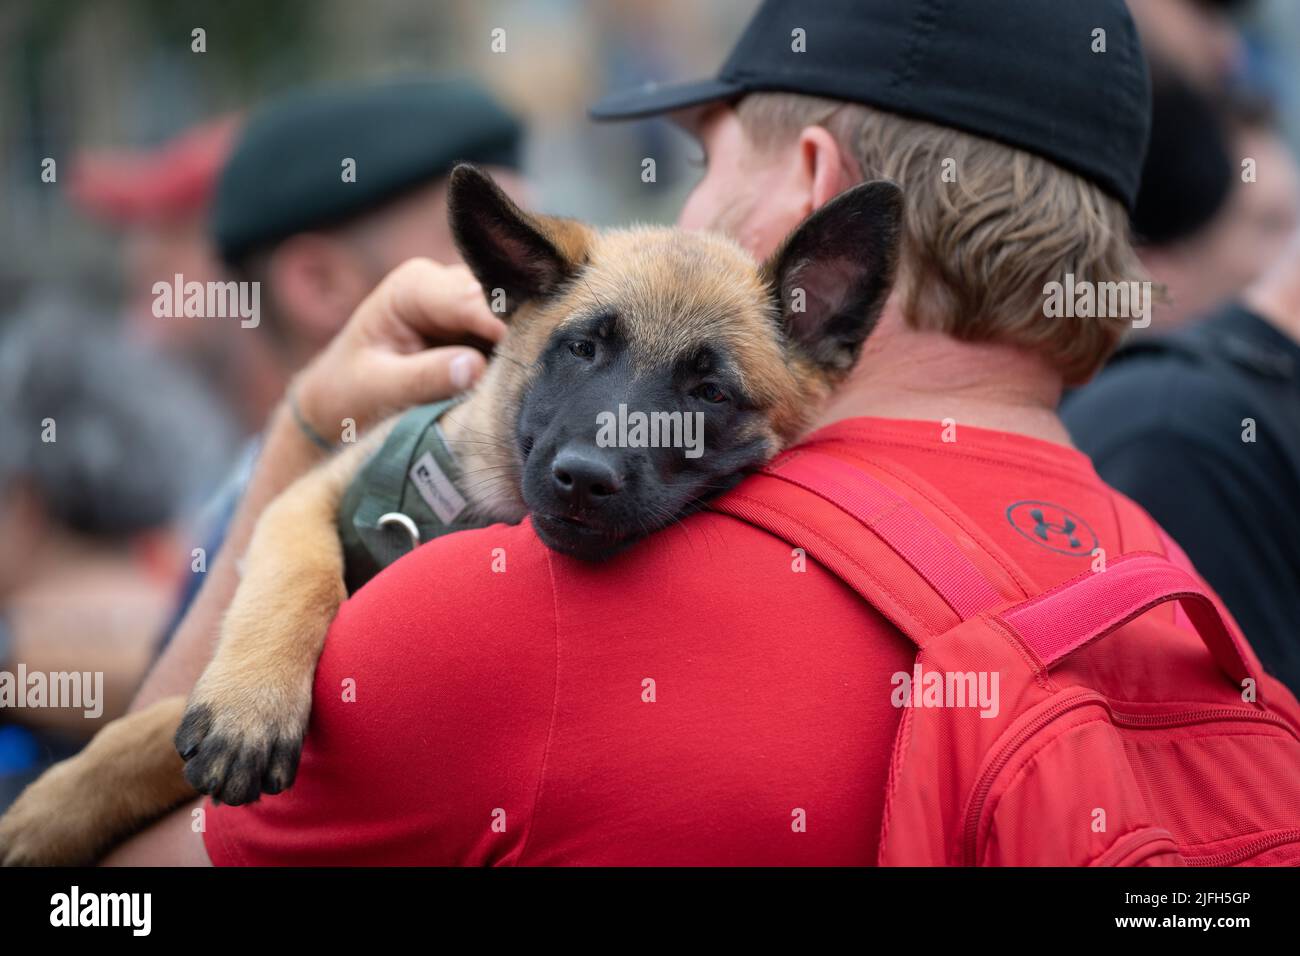 Ein Deutscher Schäferhund ruht seinen Kopf auf seiner menschlichen`s Schulter während einer Veranstaltung am National war Memorial in Ottawa, Ontario. Stockfoto